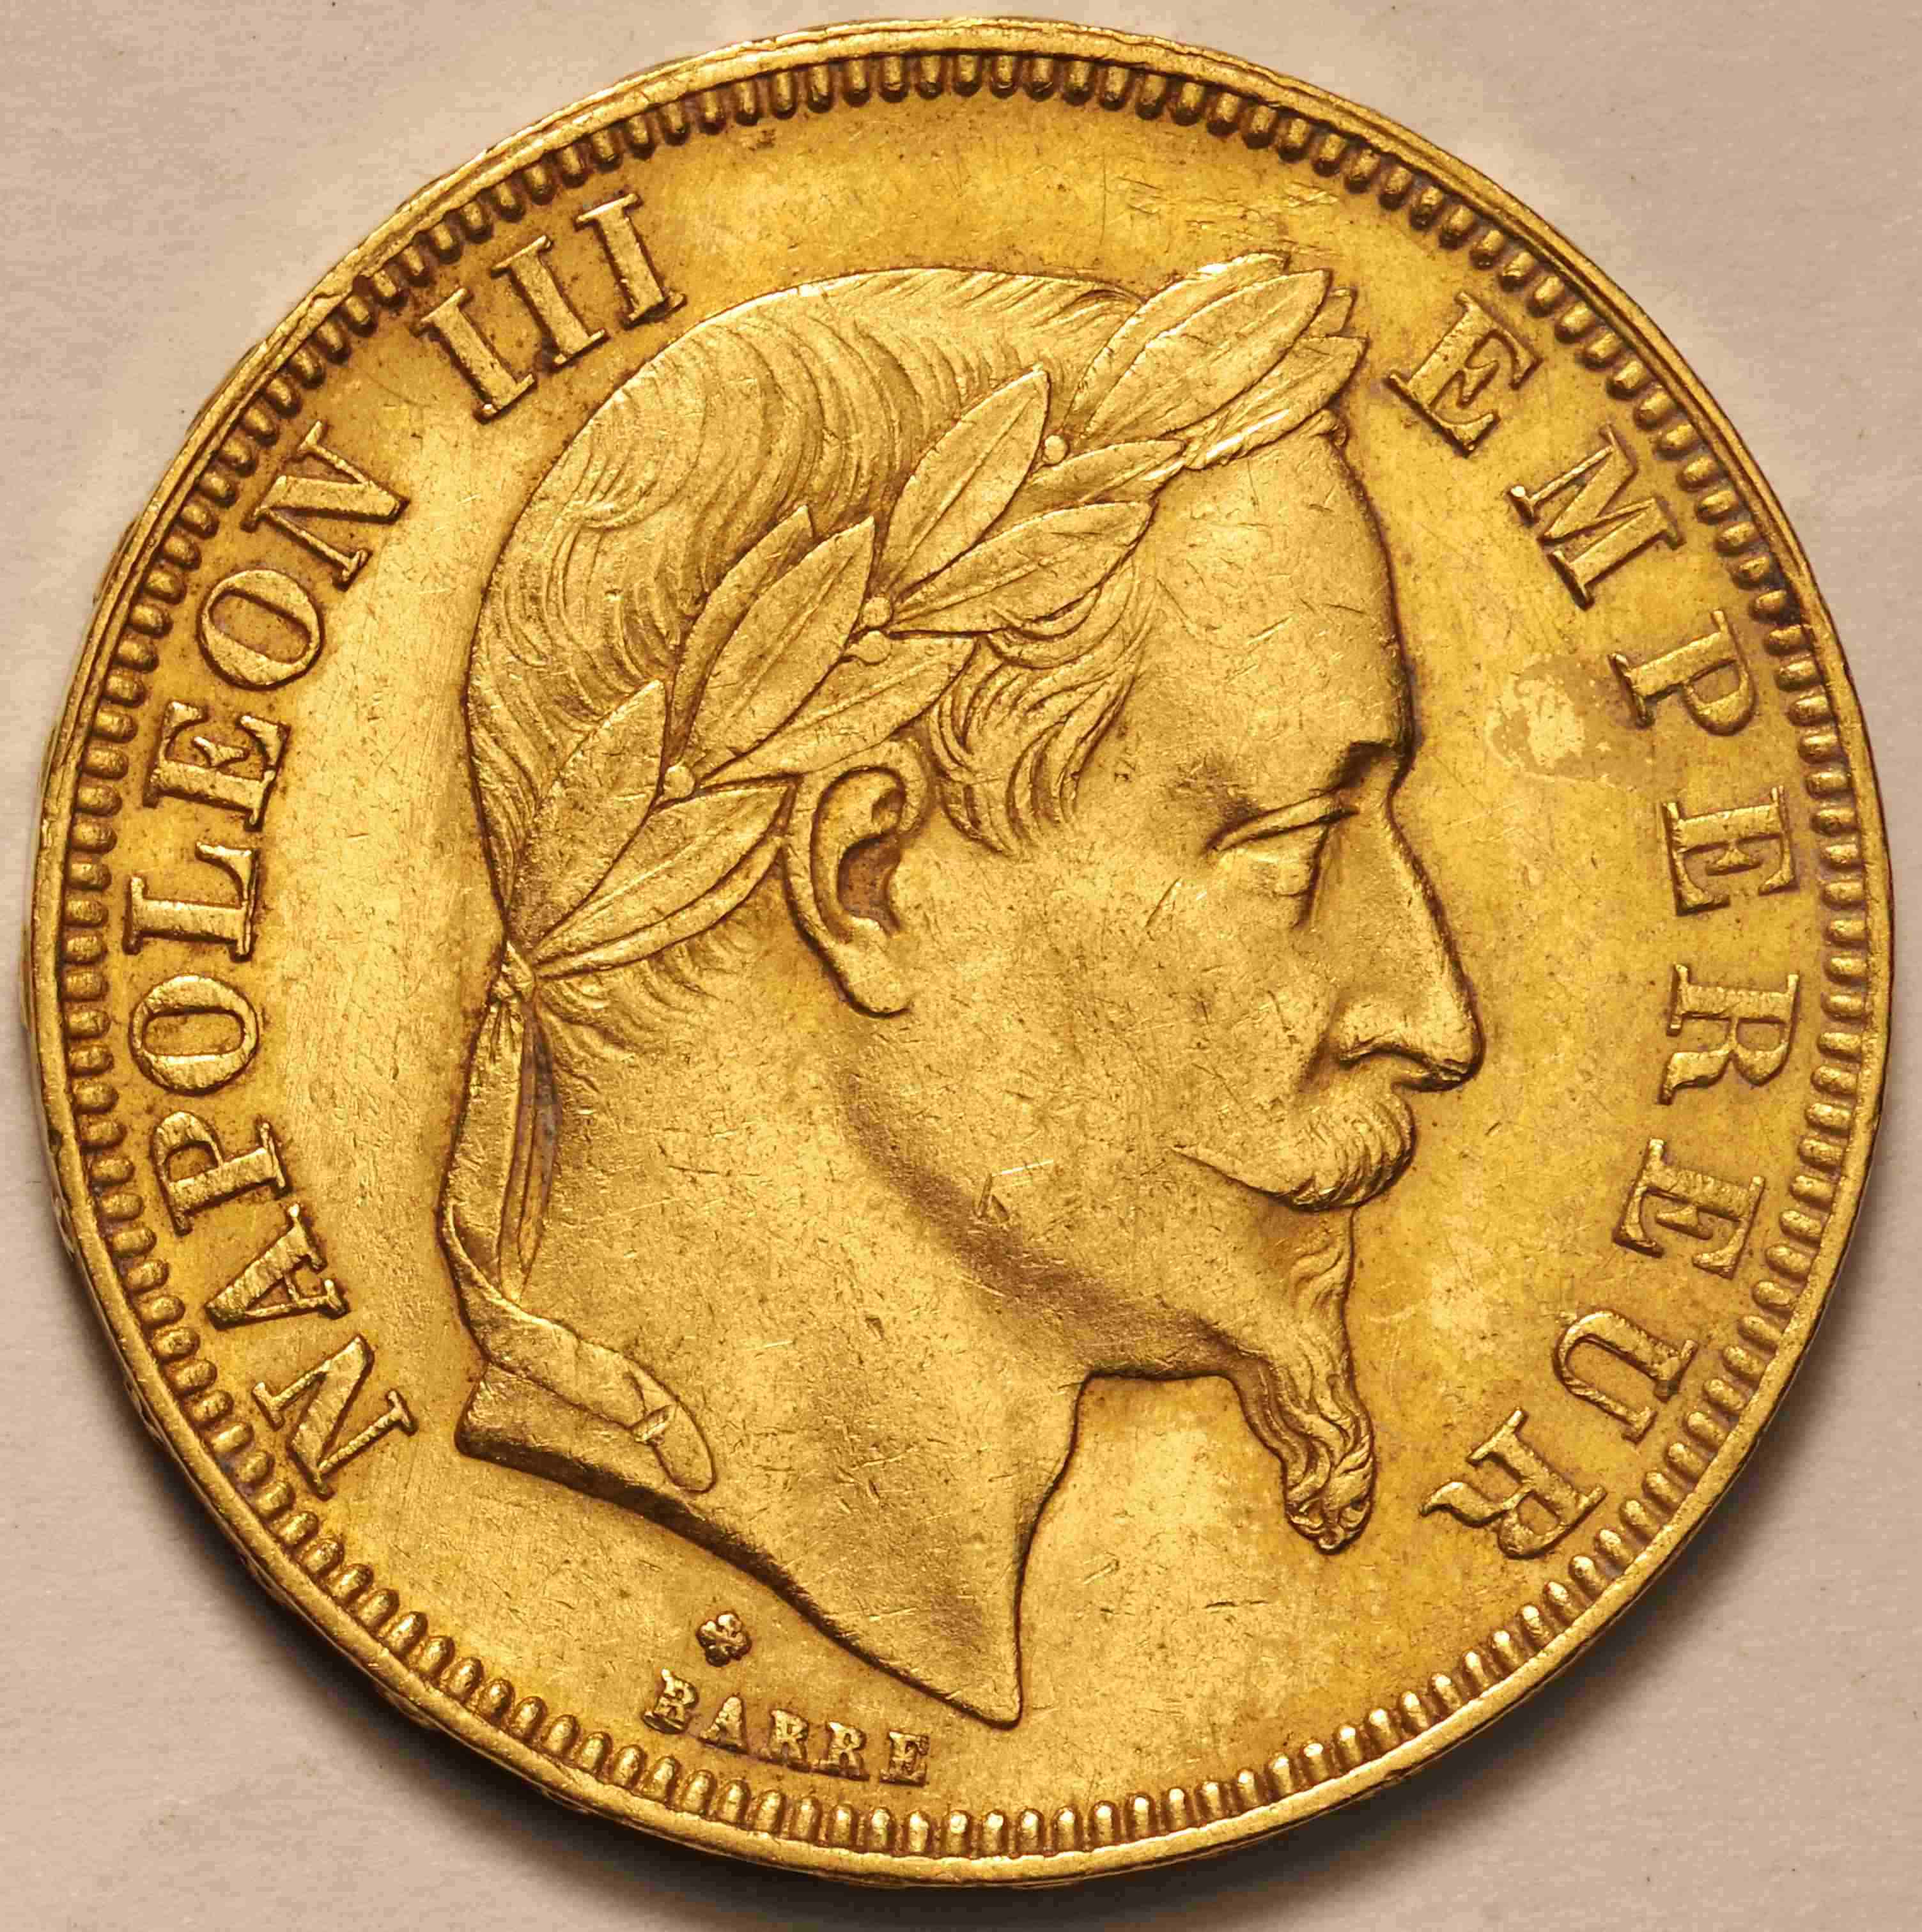 ナポレオン金貨 20フラン 1867年 - コレクション